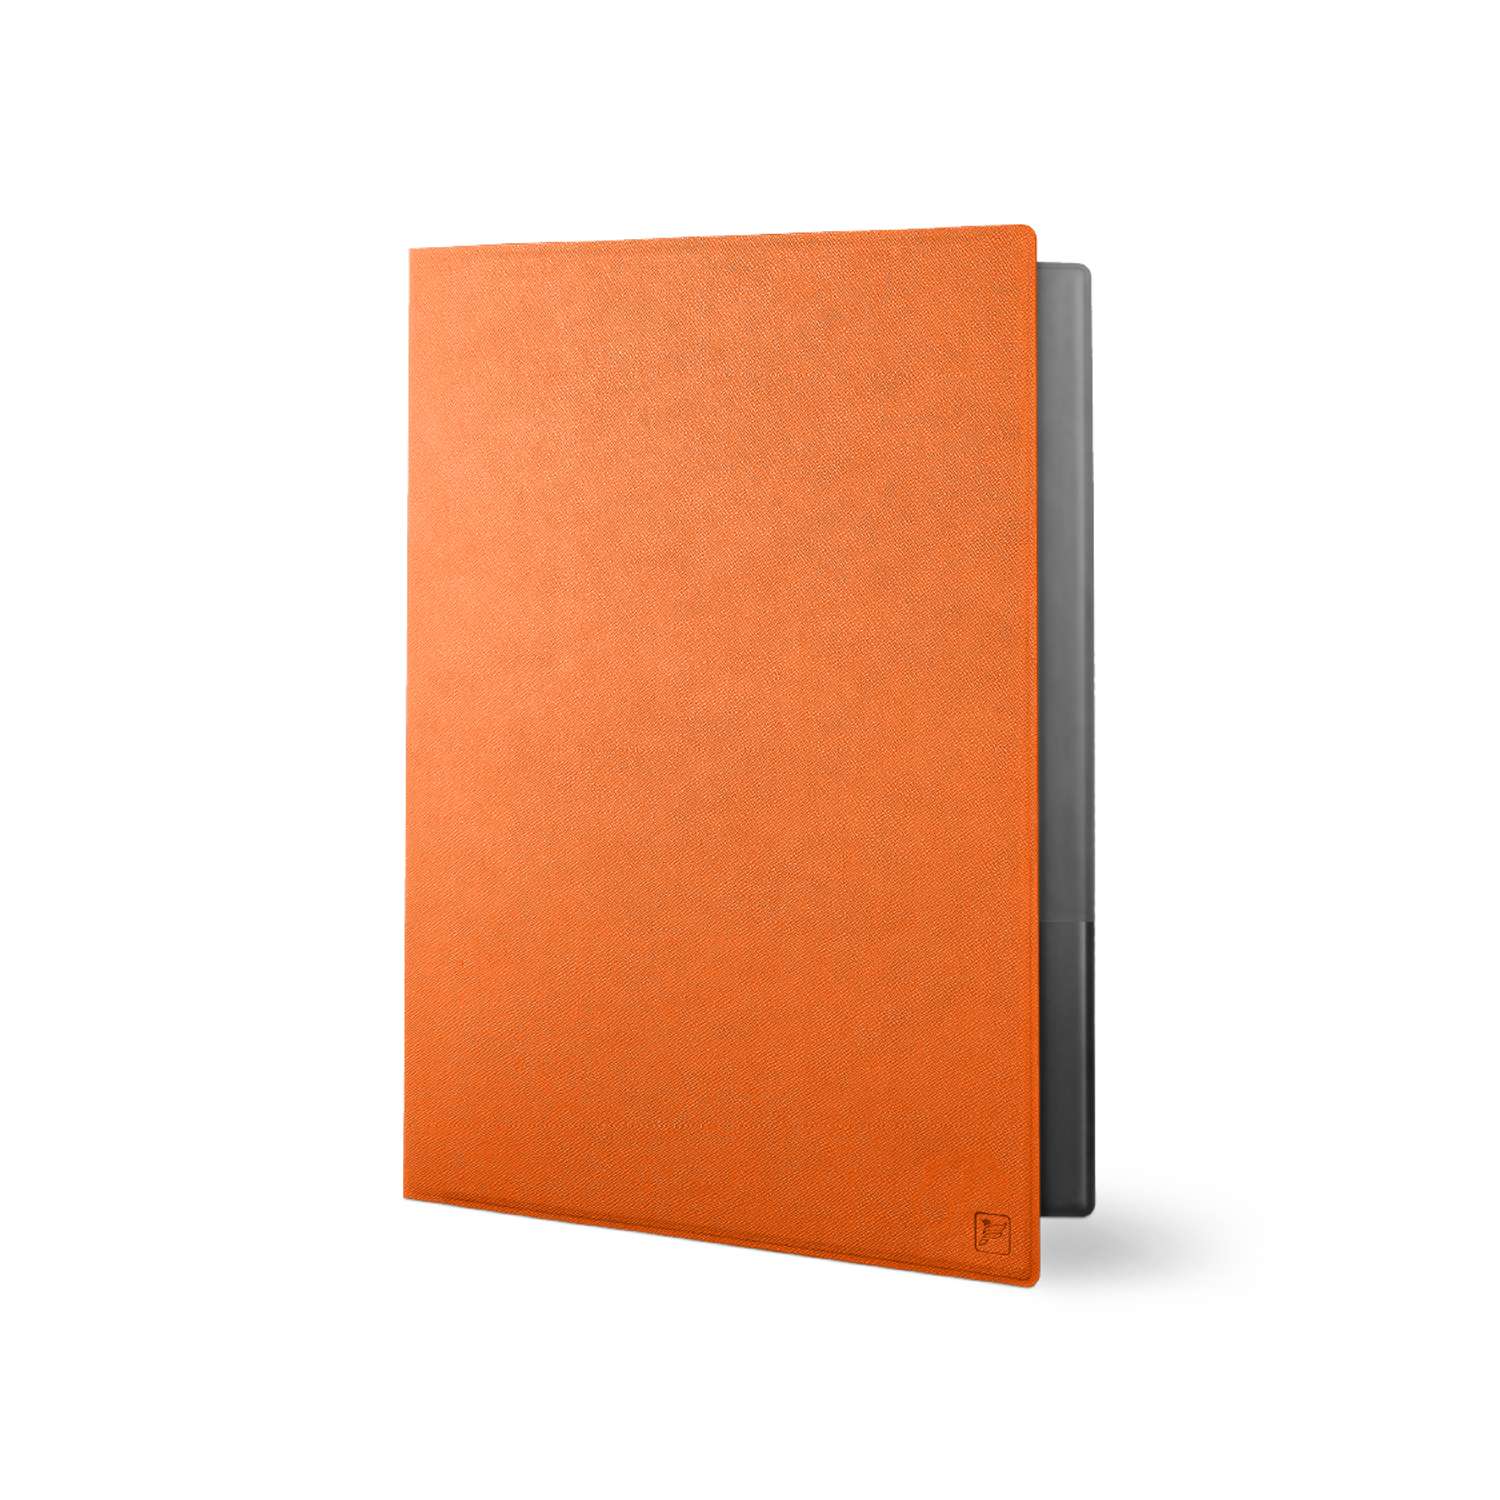 Папка классическая из экокожи Flexpocket формата А4 оранжевая - фото 1